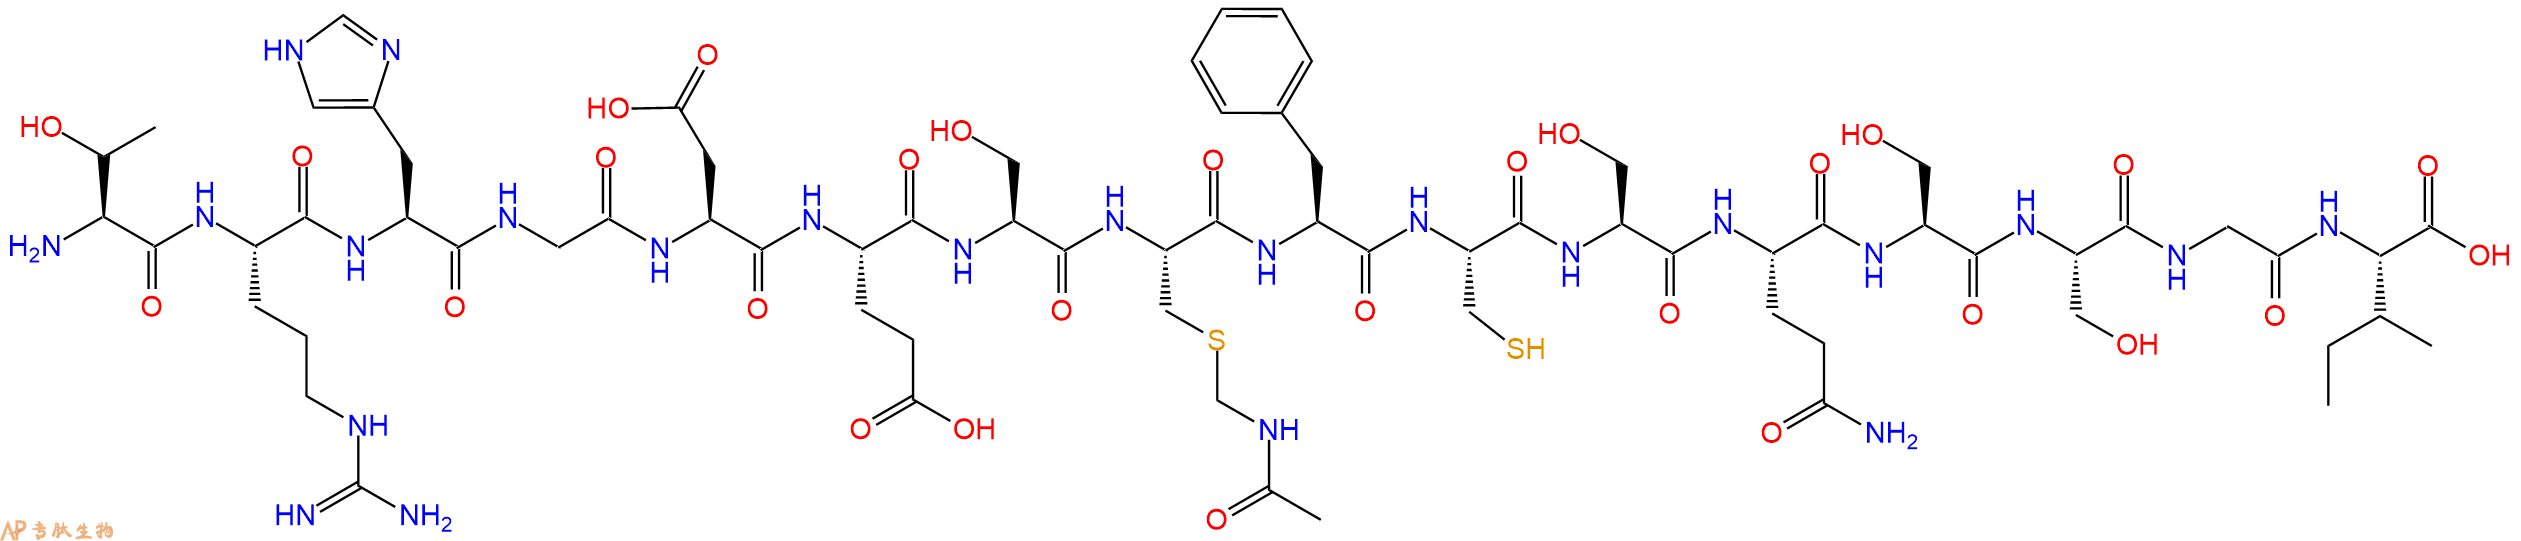 专肽生物产品H2N-Thr-Arg-His-Gly-Asp-Glu-Ser-Cys(Acm)-Phe-Cys-S